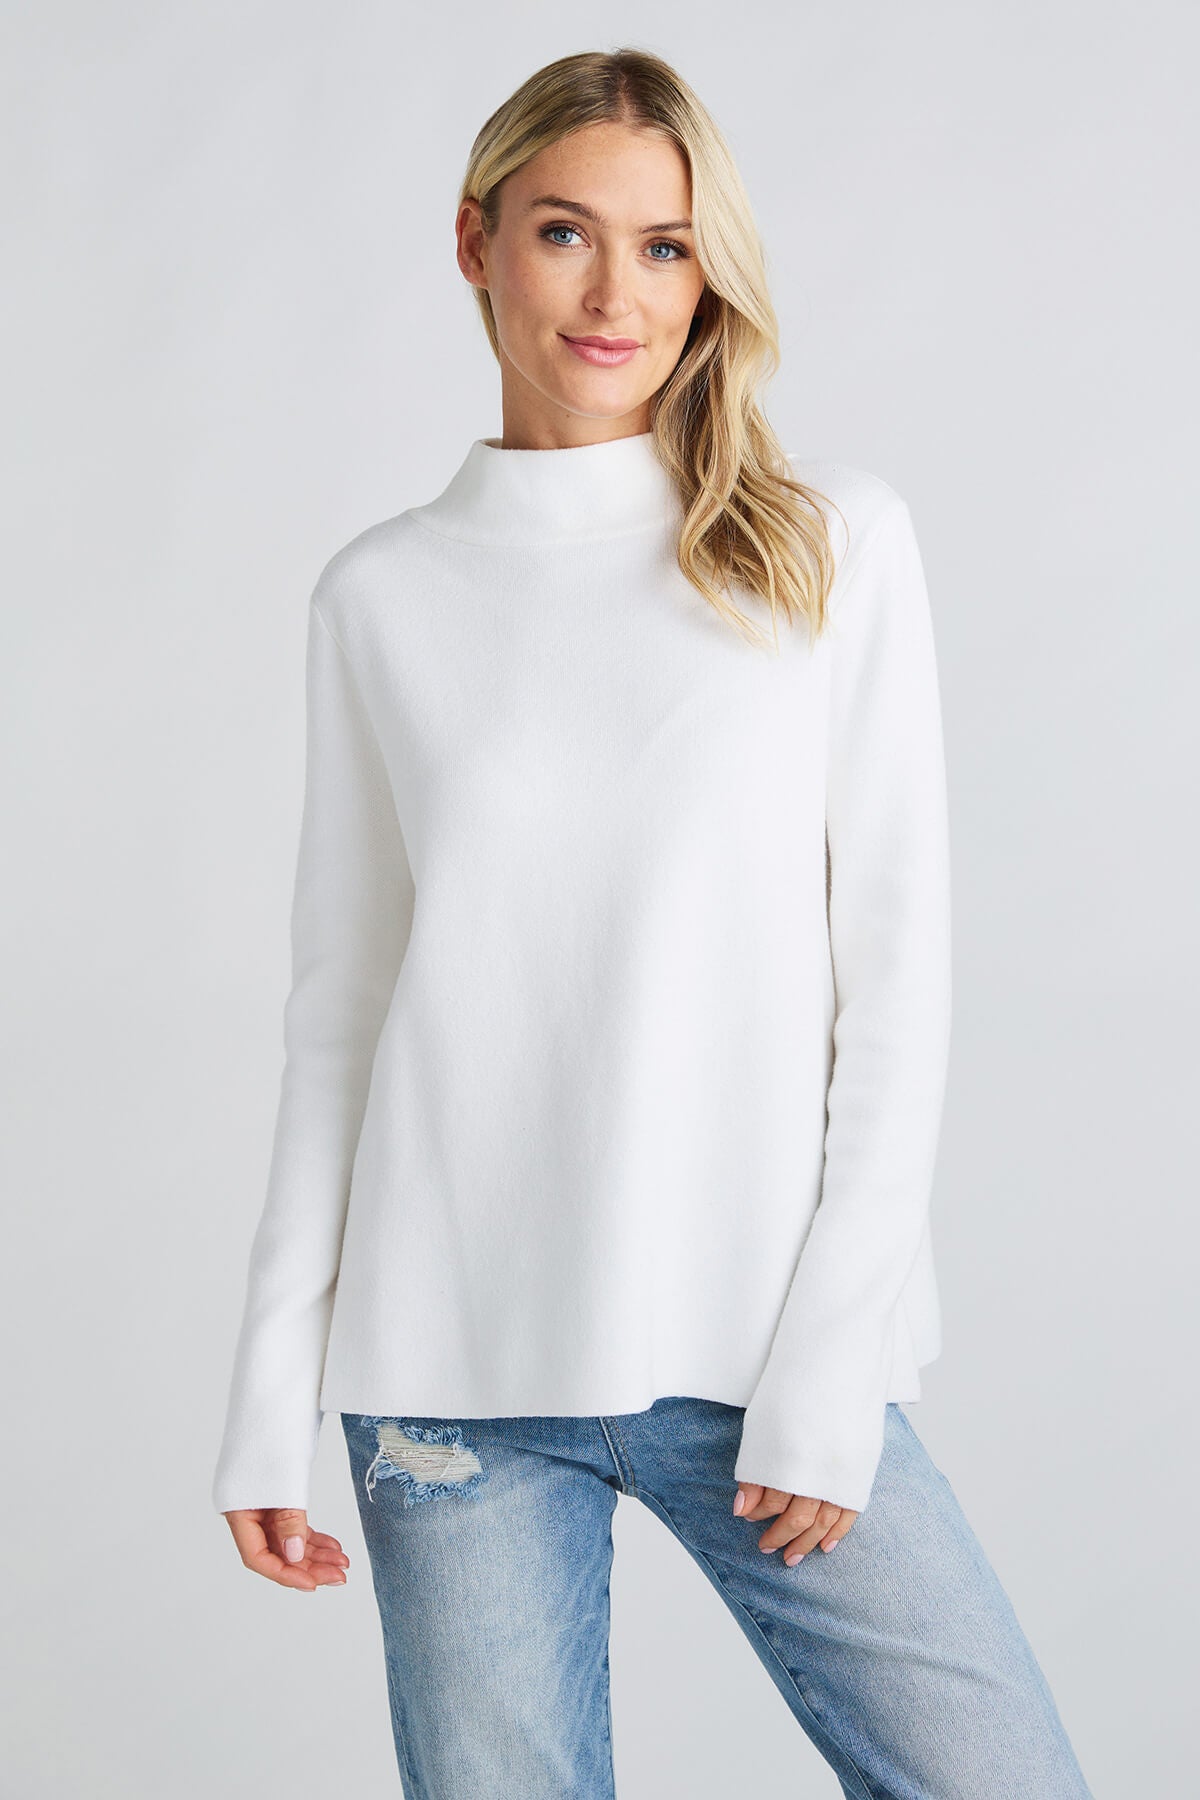 Korean fashion - white turtleneck sweater, jeans, grey coat, white